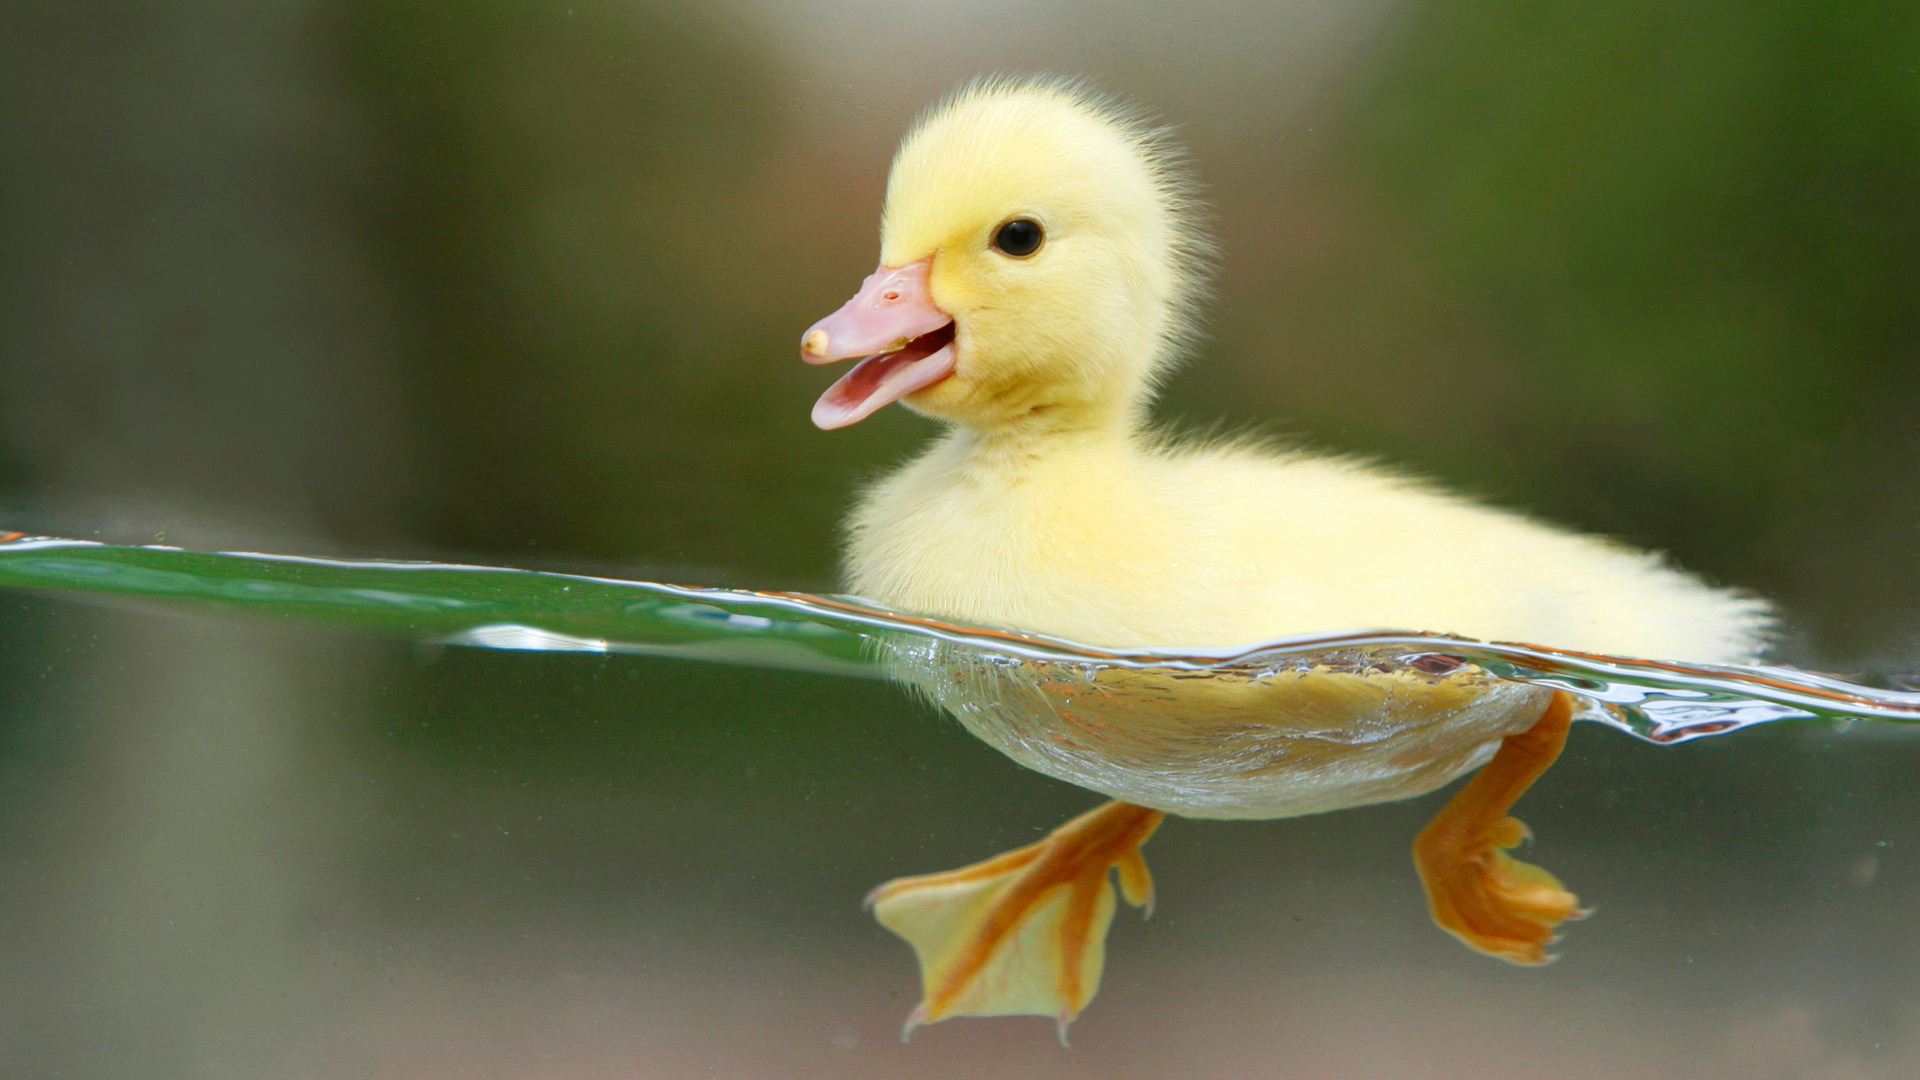 ... Ducks and Cute Ducklings ...